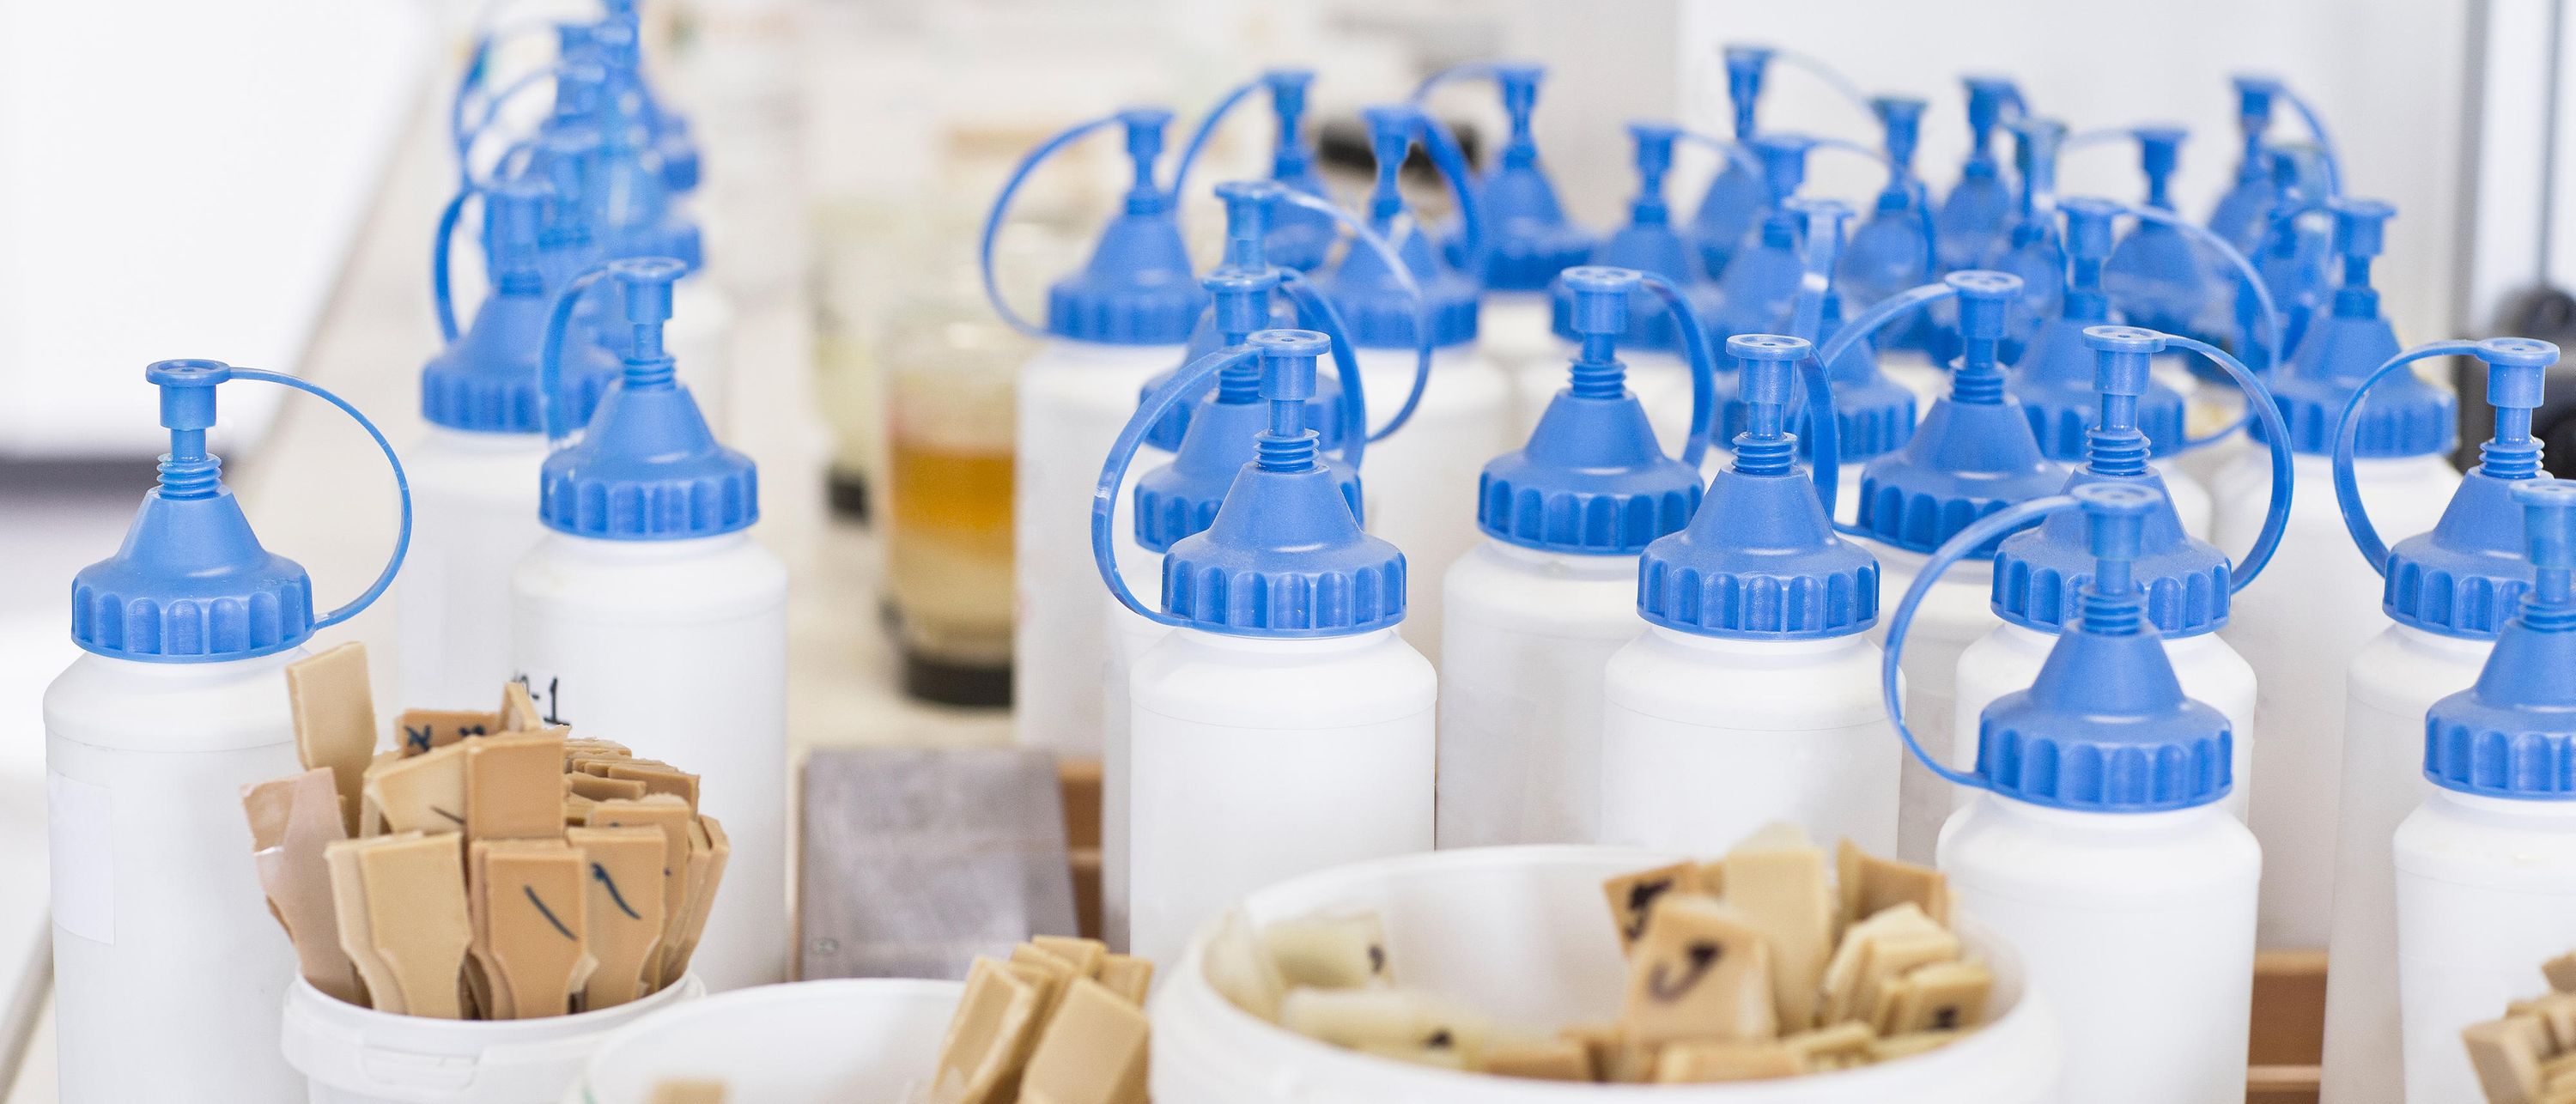 белые пластиковые бутылки с синими крышками под чашками с маленькими деревянными шпателями